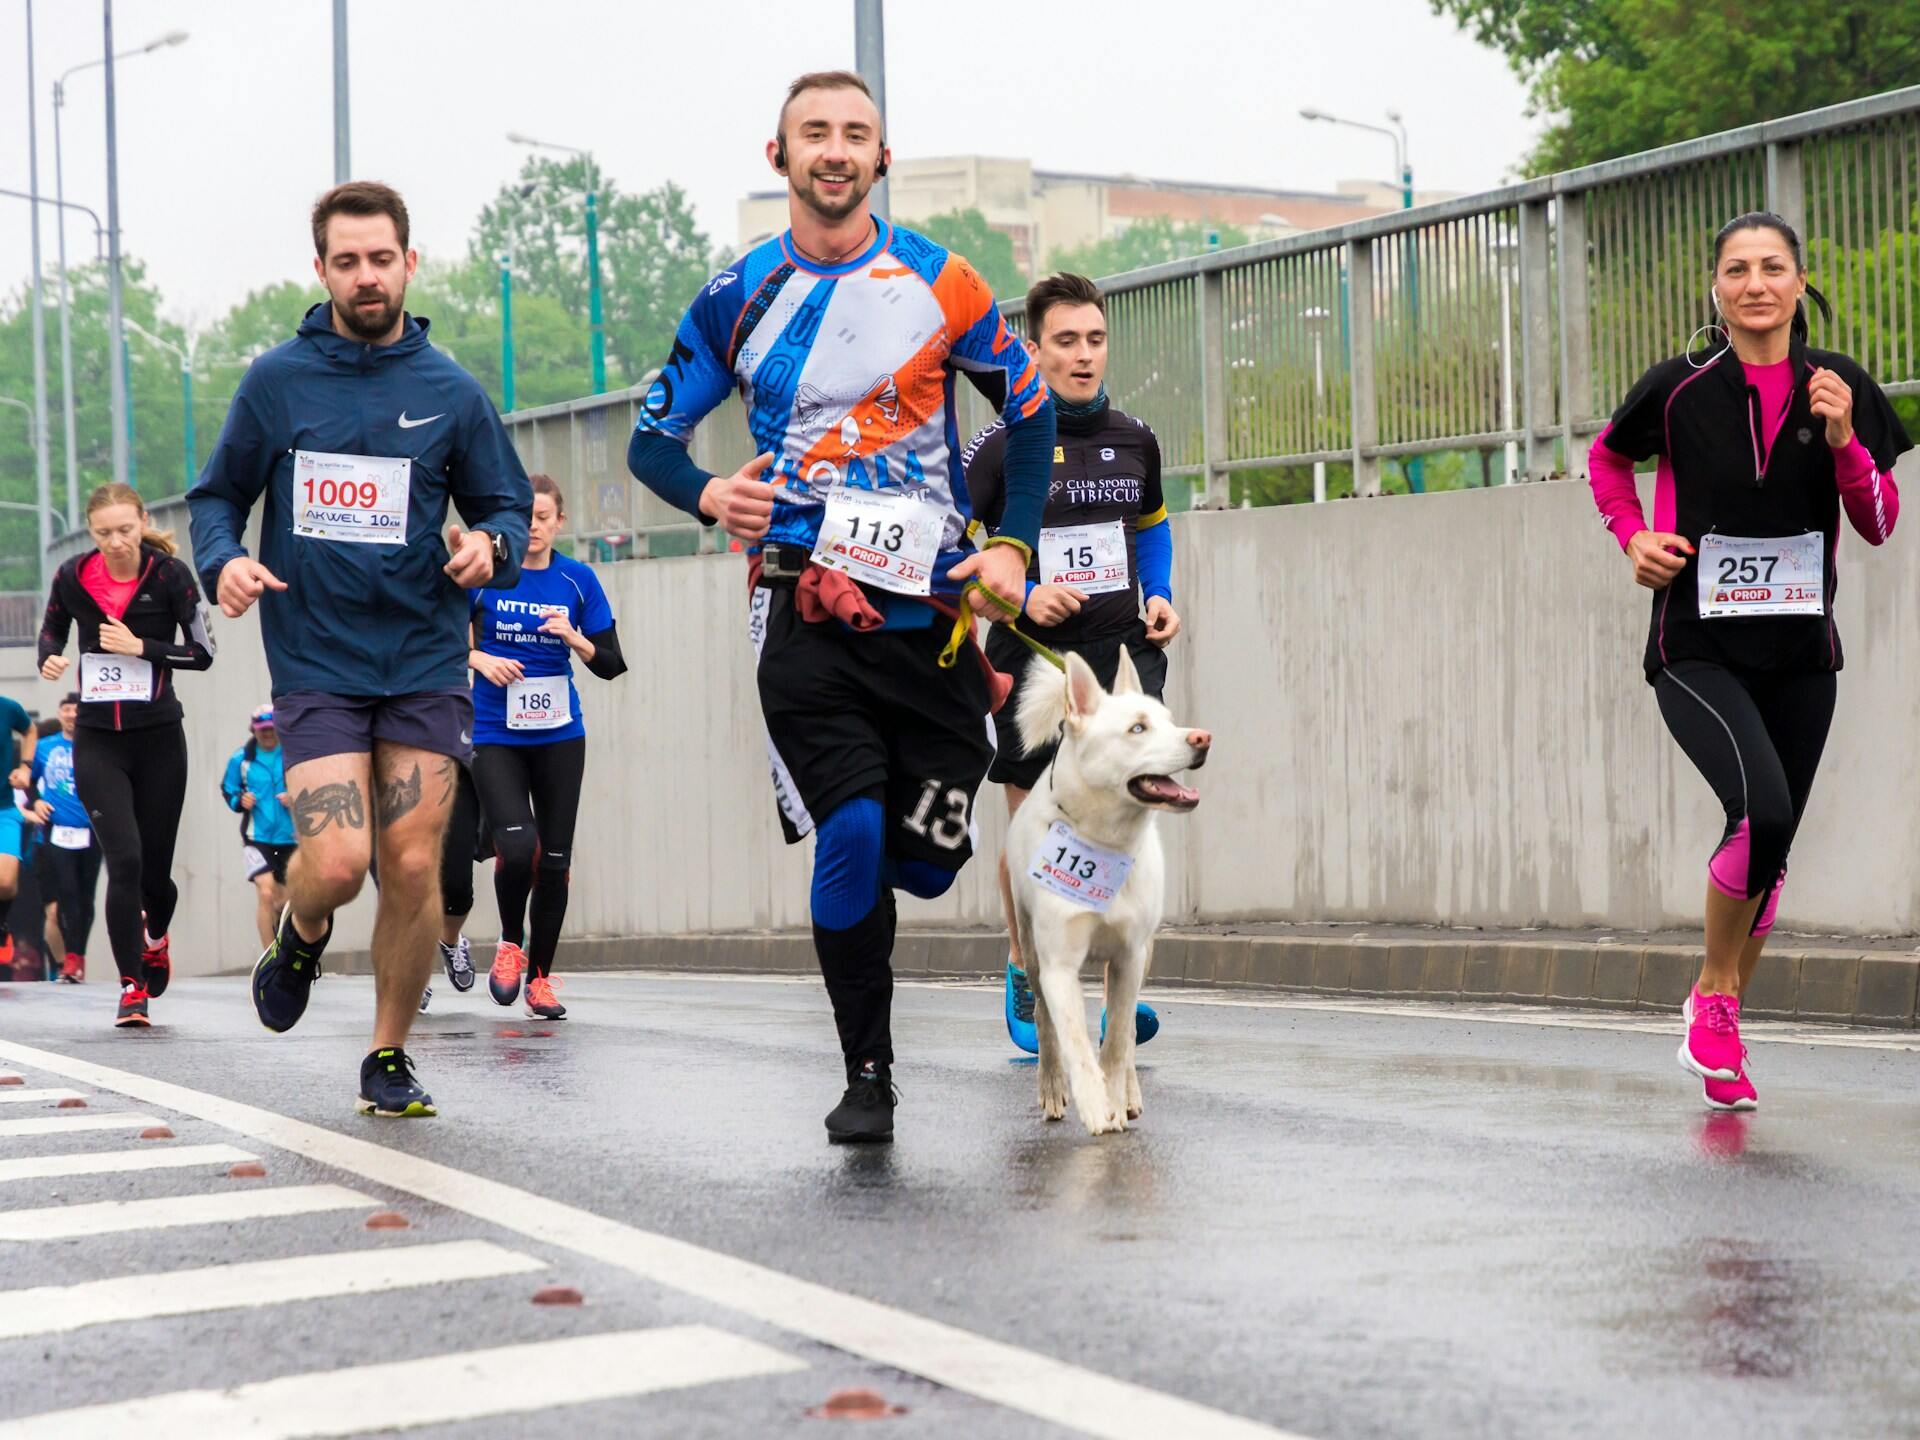 En grupp maratonlöpare som springer på gata med en hund